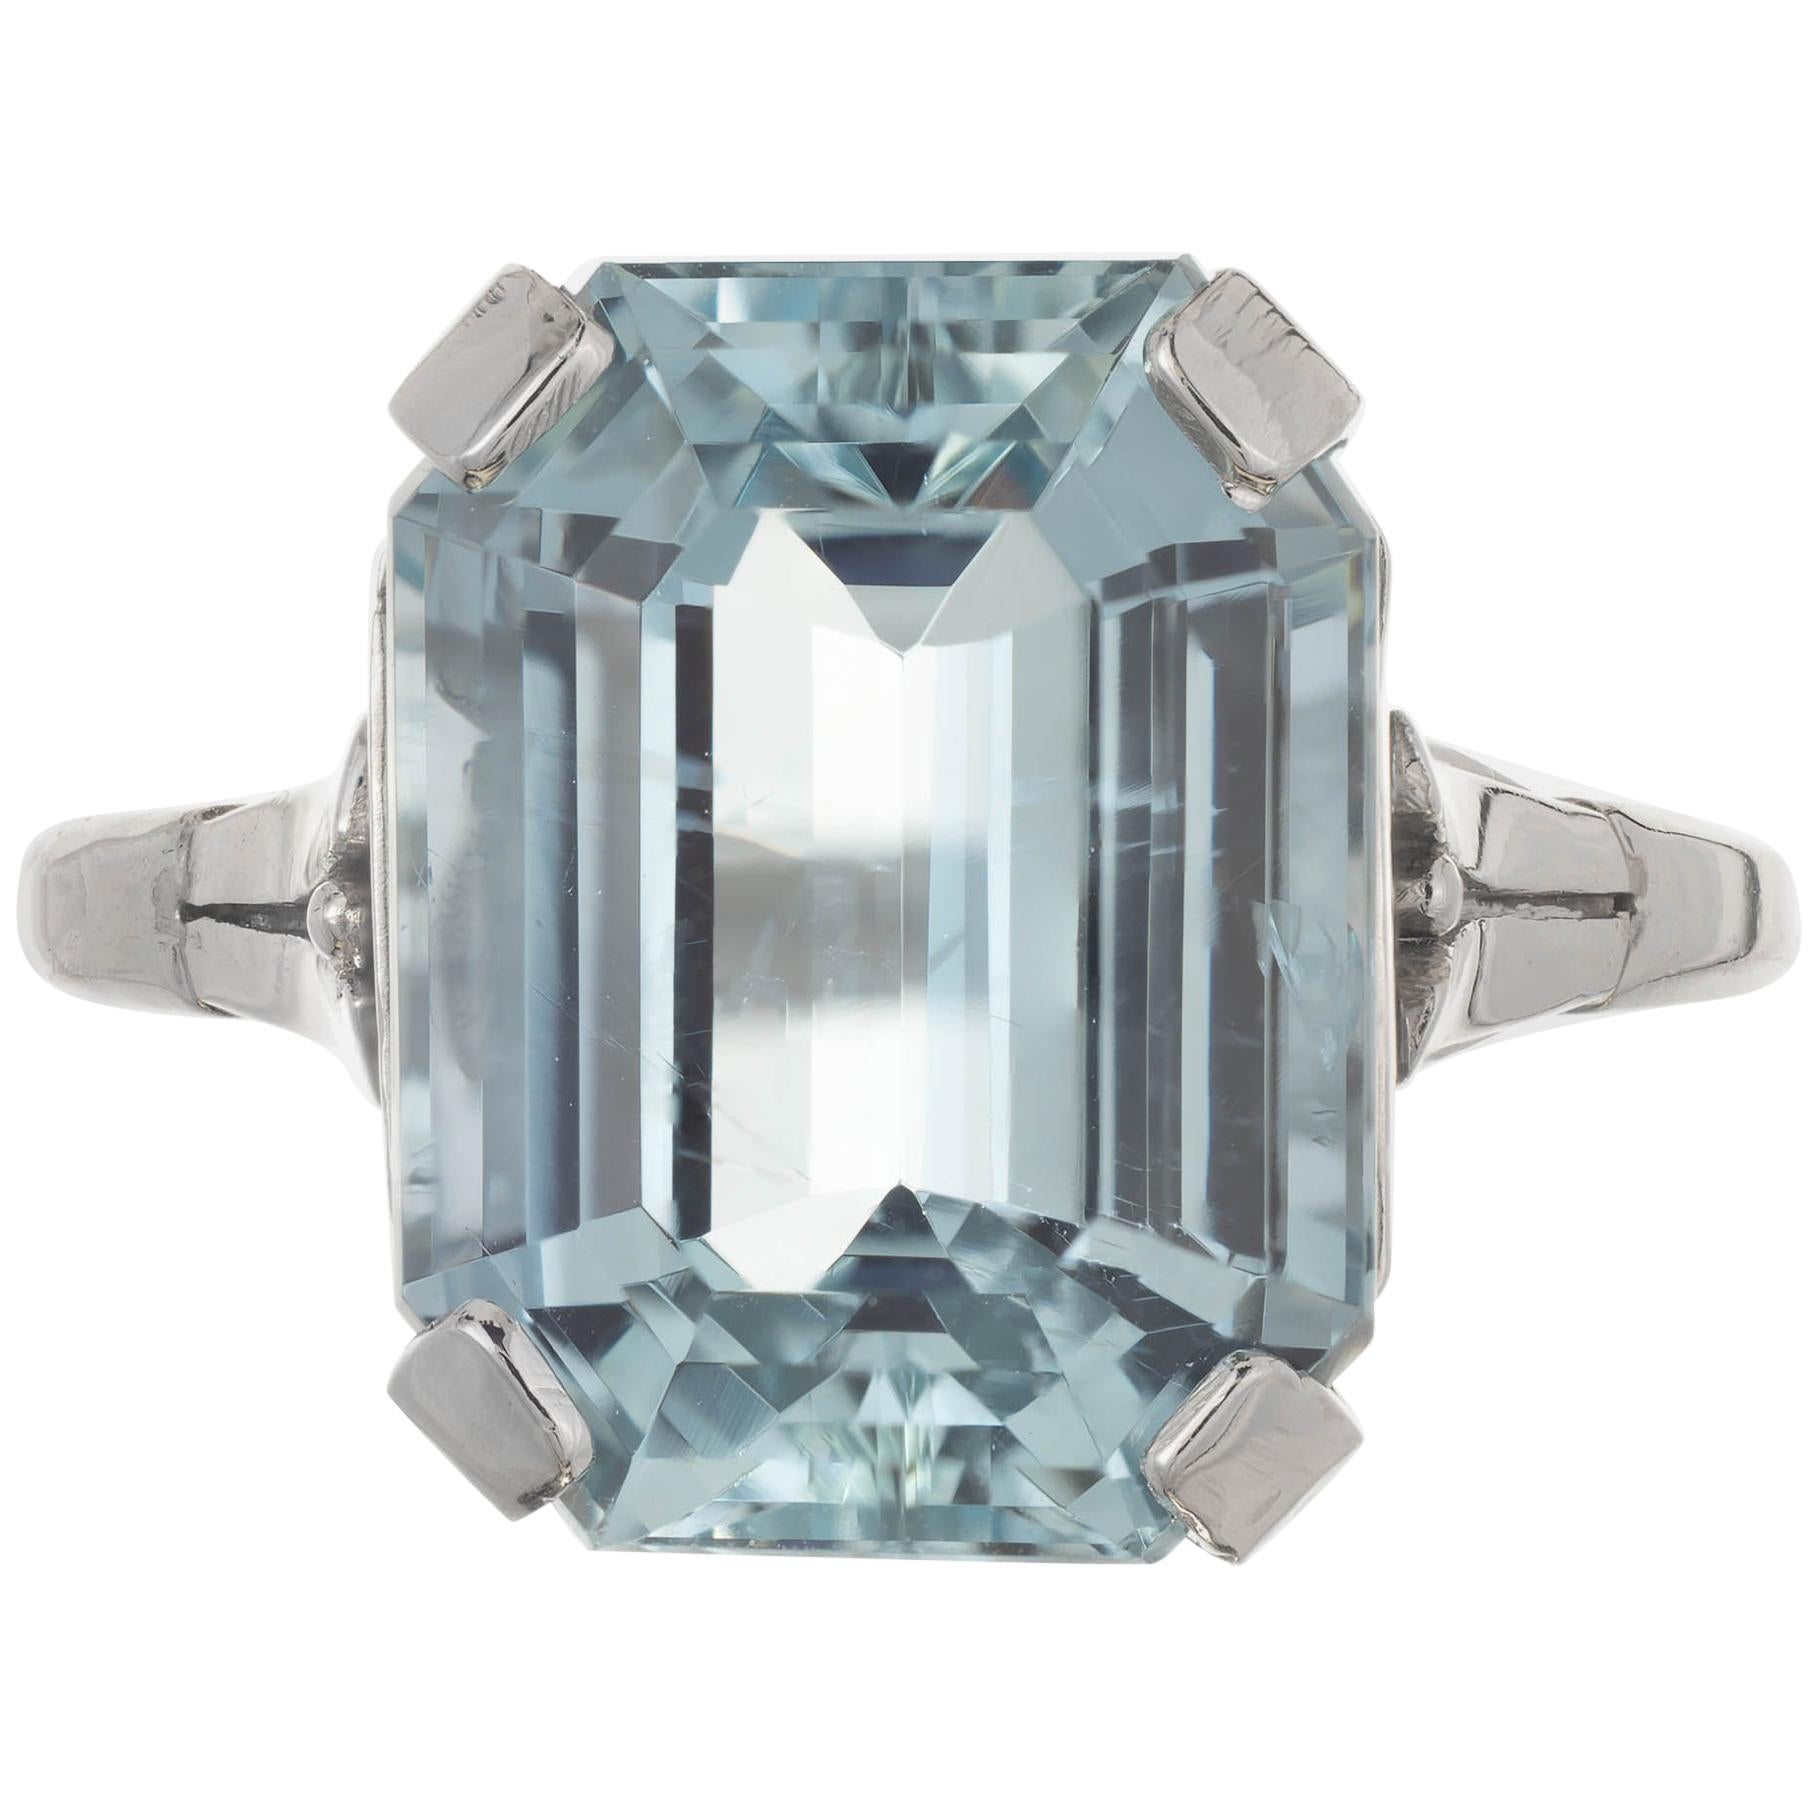 6.05 Carat Green Blue Aquamarine Pierced Platinum Art Deco Engagement Ring